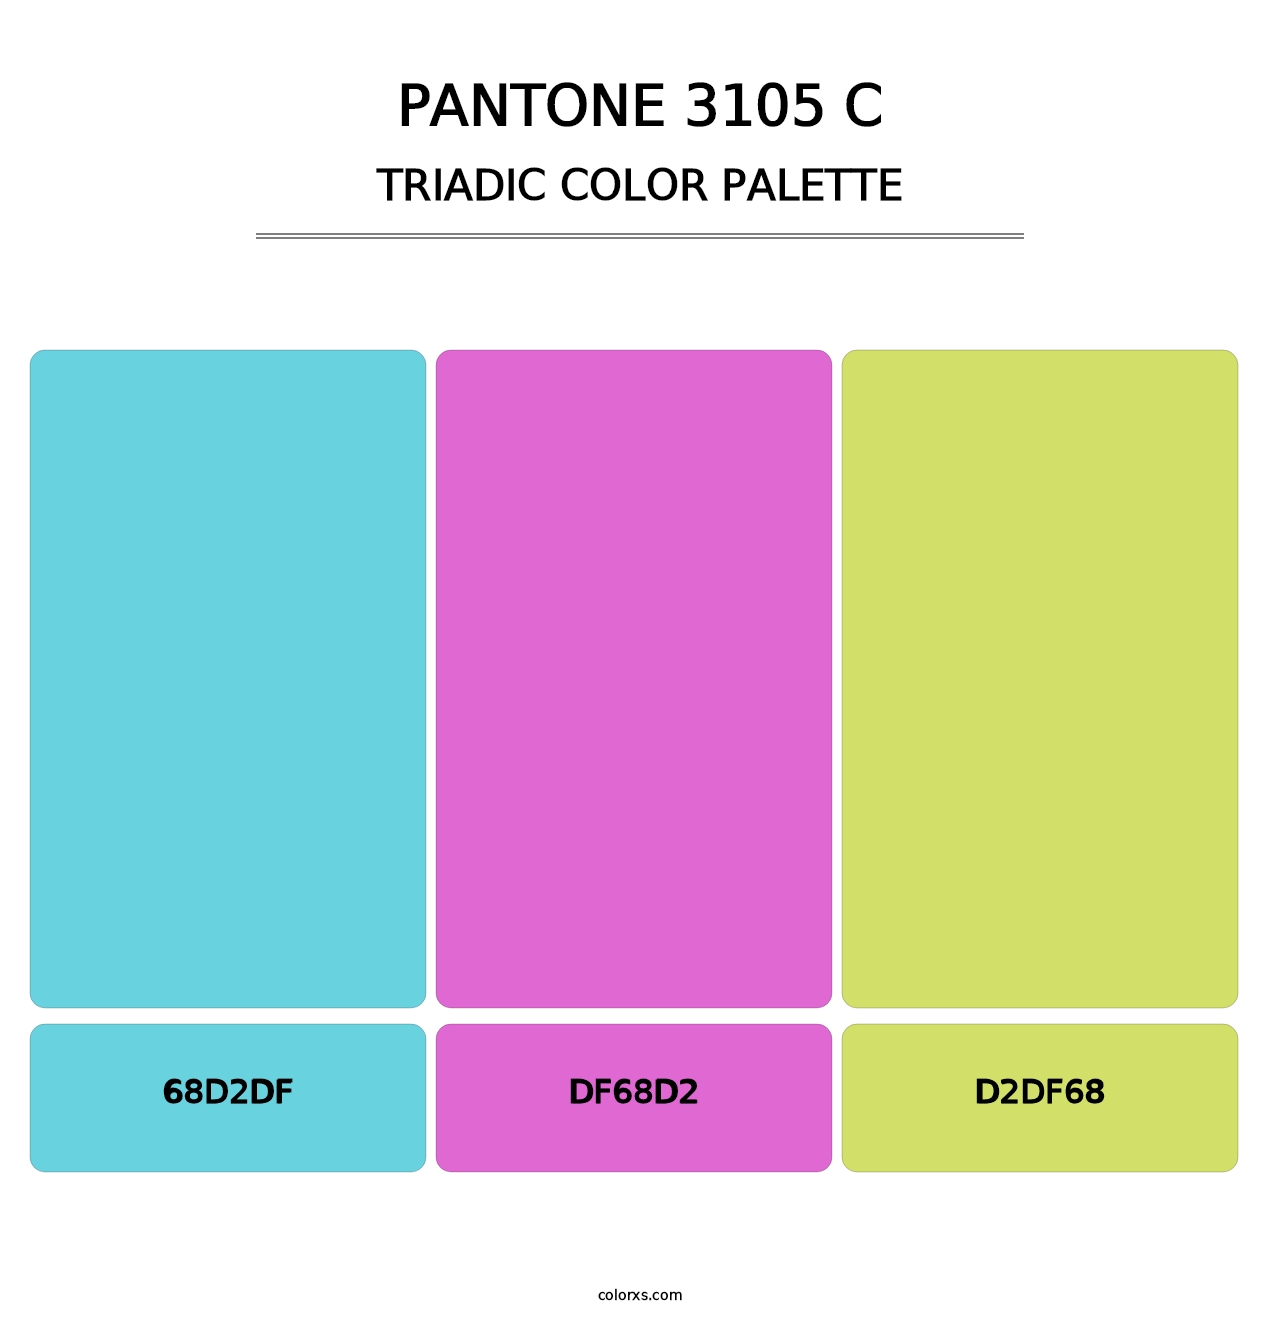 PANTONE 3105 C - Triadic Color Palette